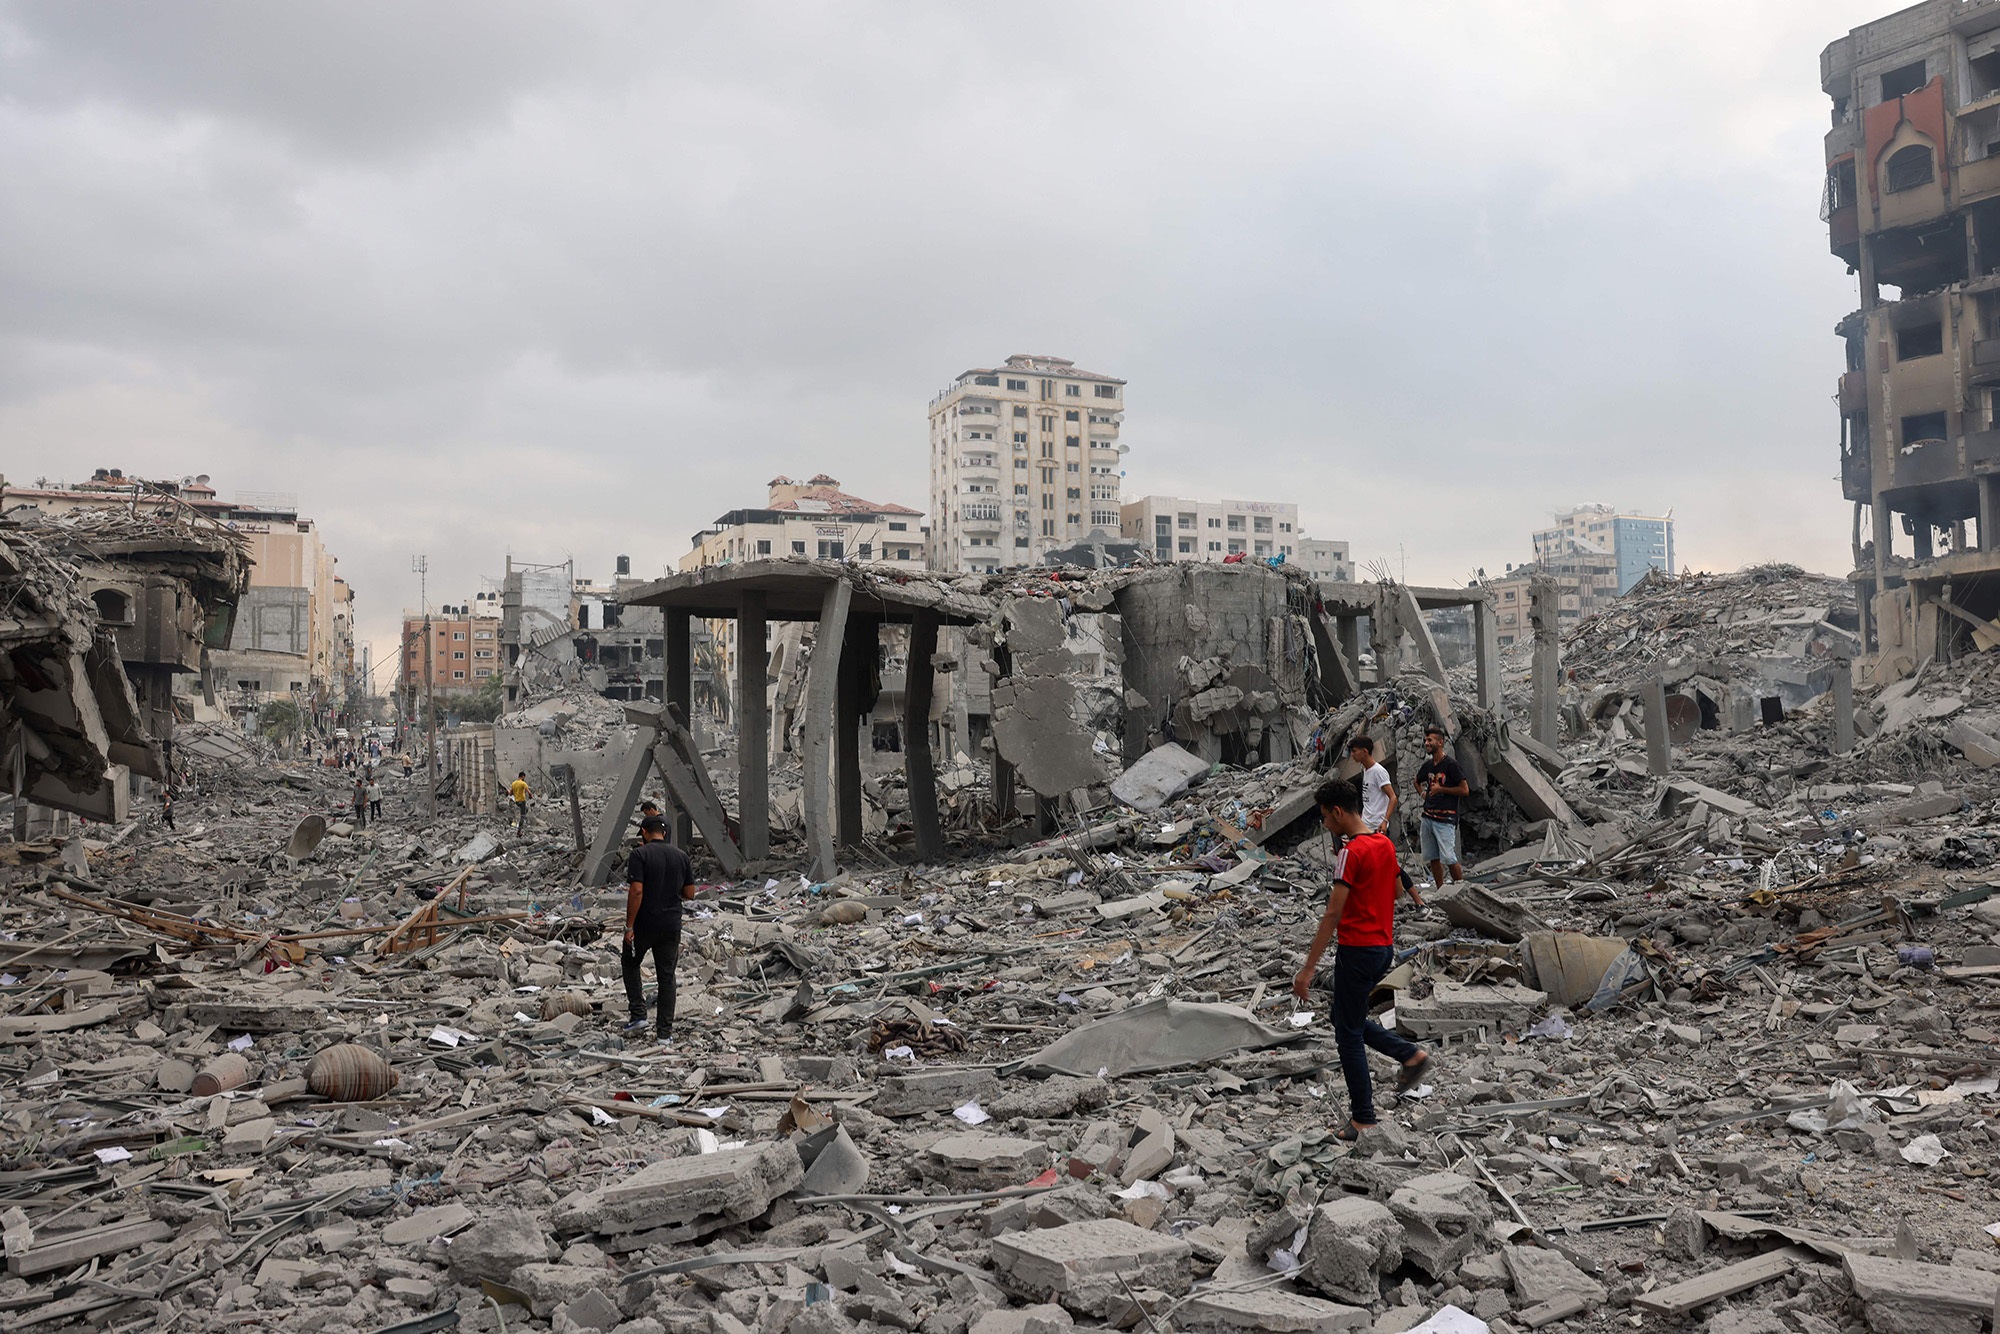 Giáng đòn trả thù chết chóc xuống đầu Hamas, Israel thu về 1.500 thi thể phiến quân - Ảnh 1.